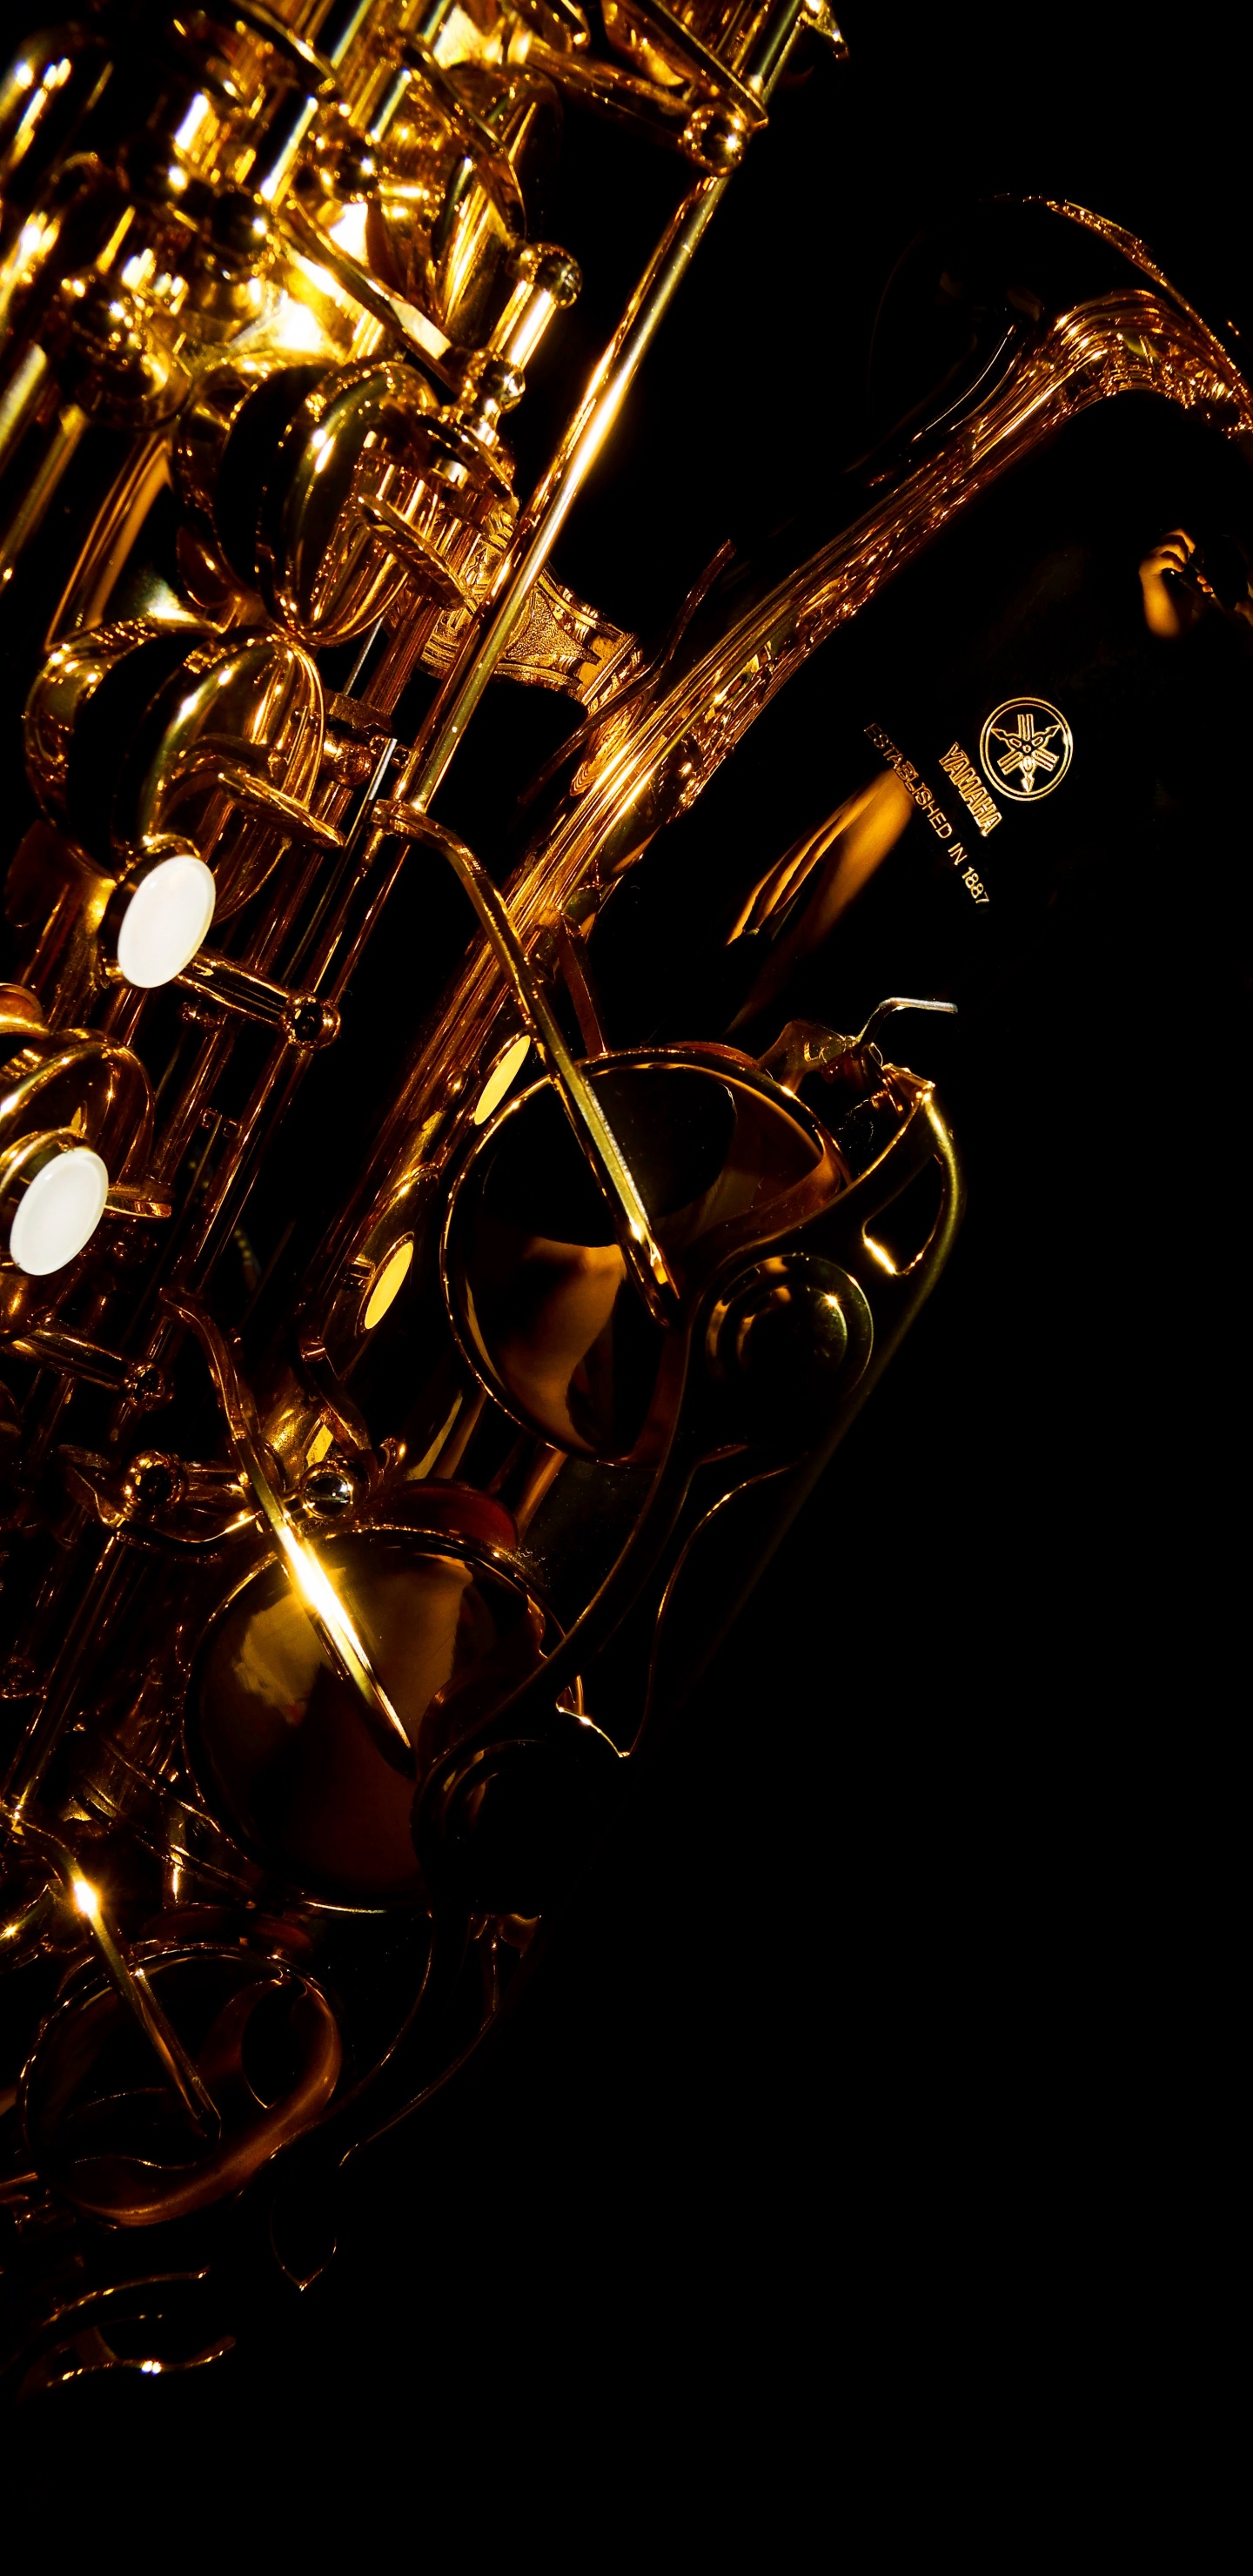 Trompete, Saxophon, Messing-instrument, Wind Instrument, Holzblasinstrument. Wallpaper in 1440x2960 Resolution